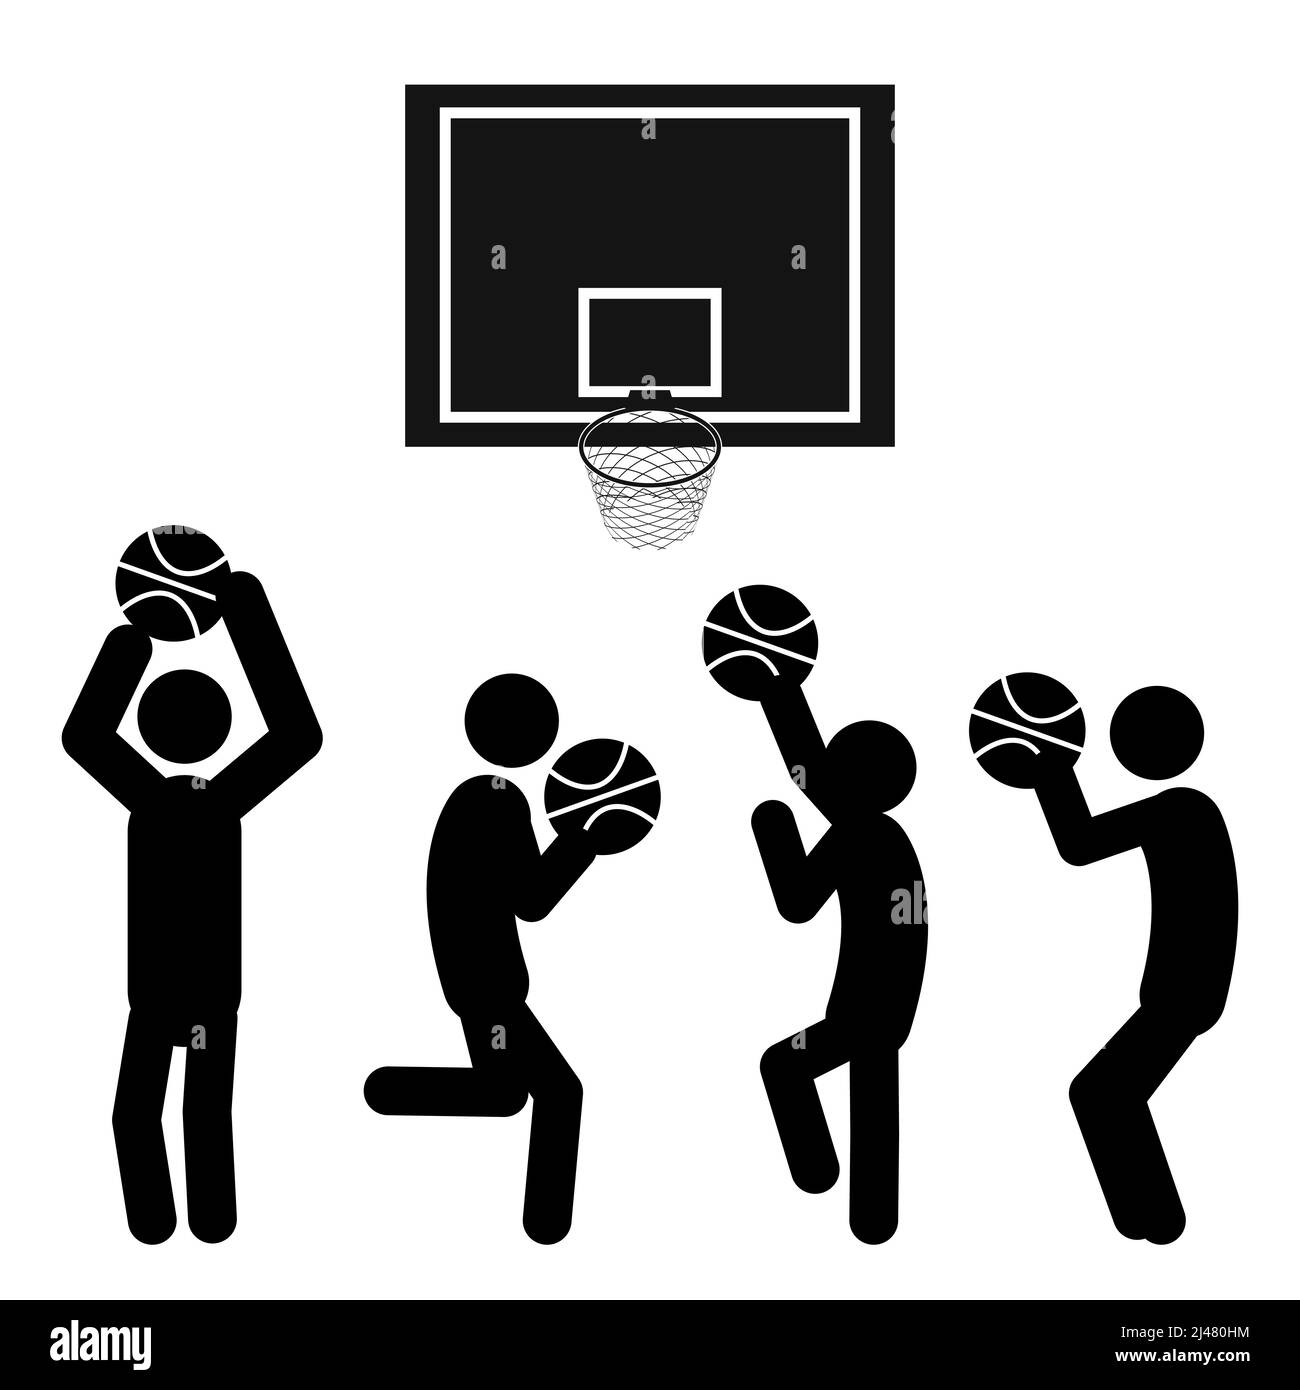 Jeu de figurines jouant au basket-ball sur fond blanc. Style plat, illustration vectorielle. Illustration de Vecteur